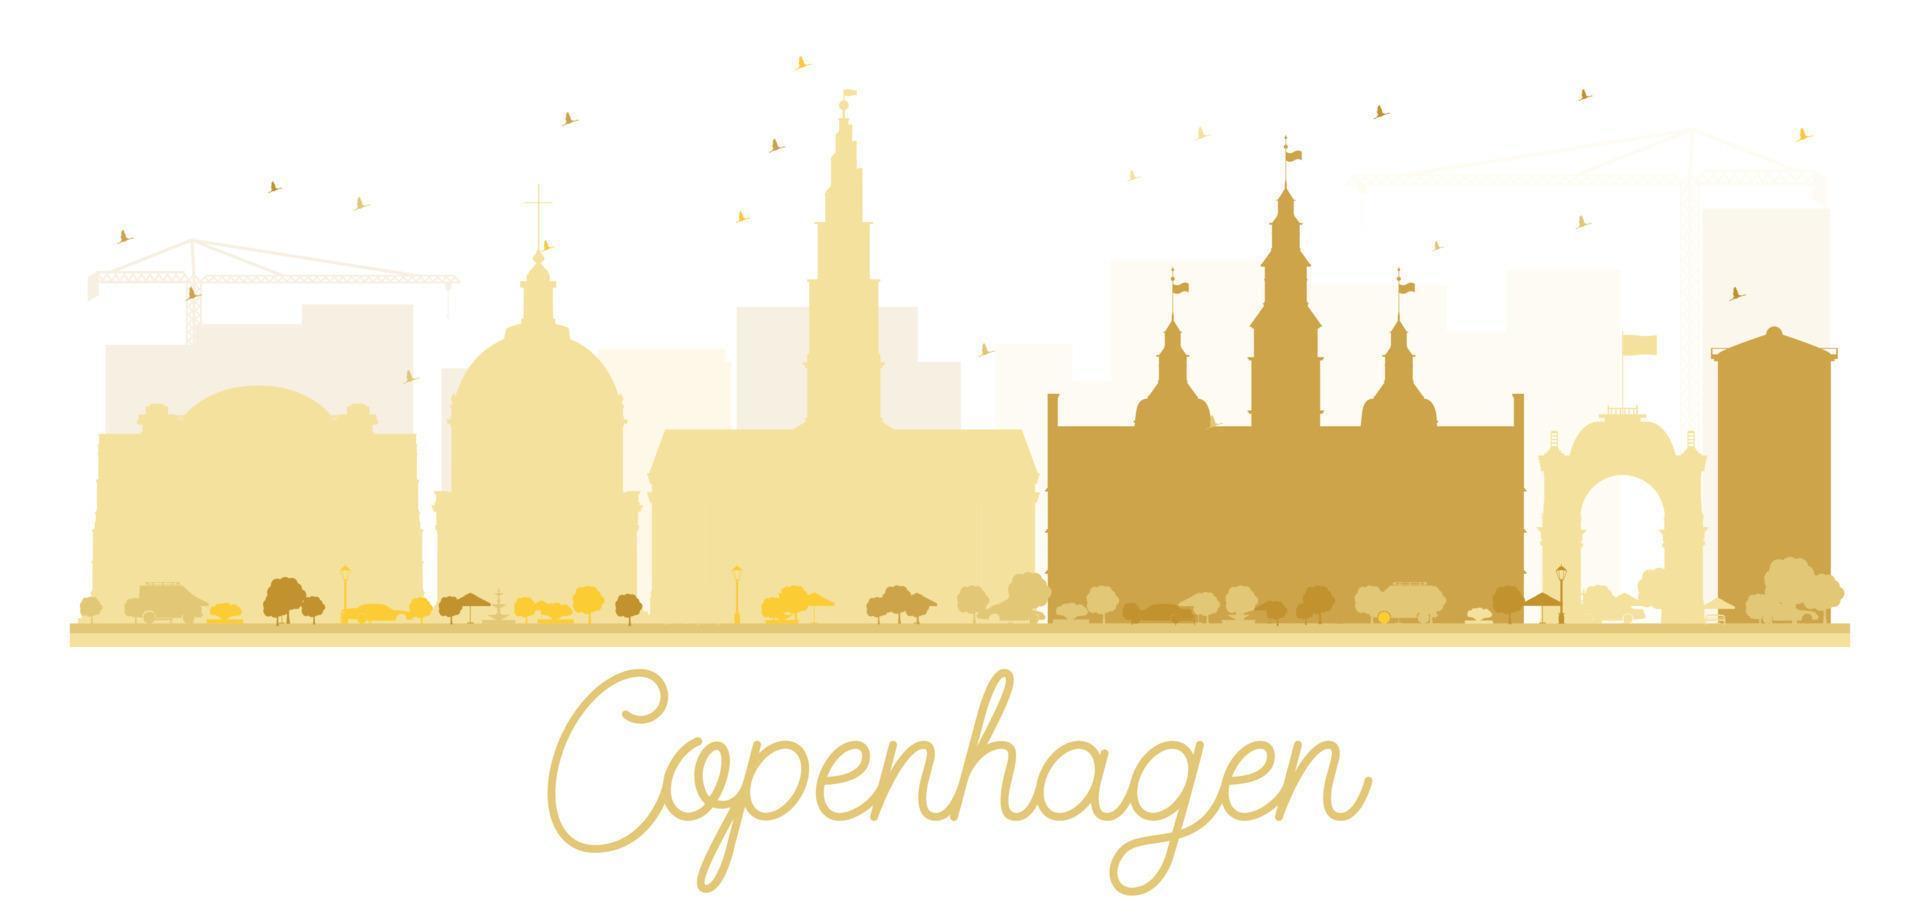 Copenhagen City skyline golden silhouette. vector